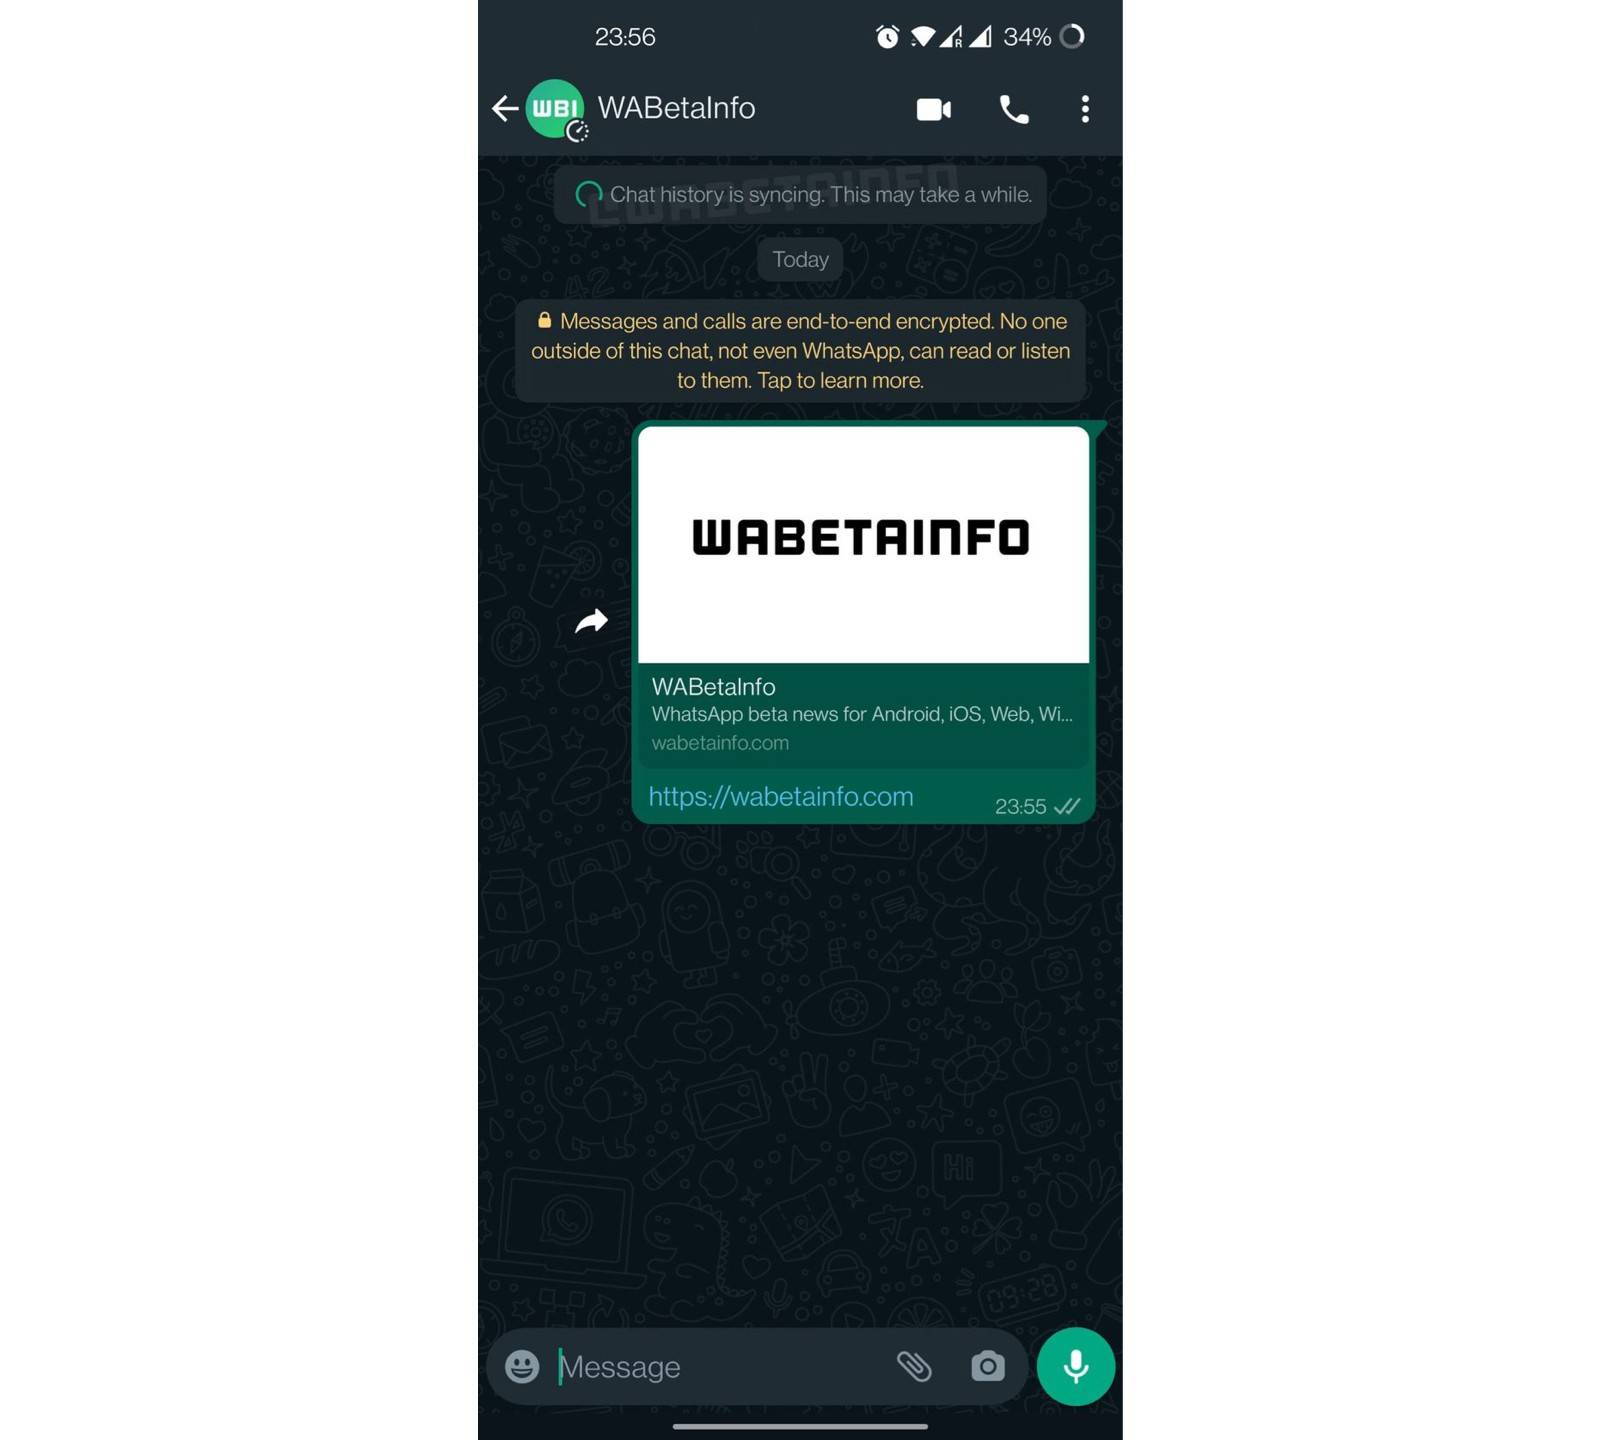 Screenshot showing WhatsApp companion mode